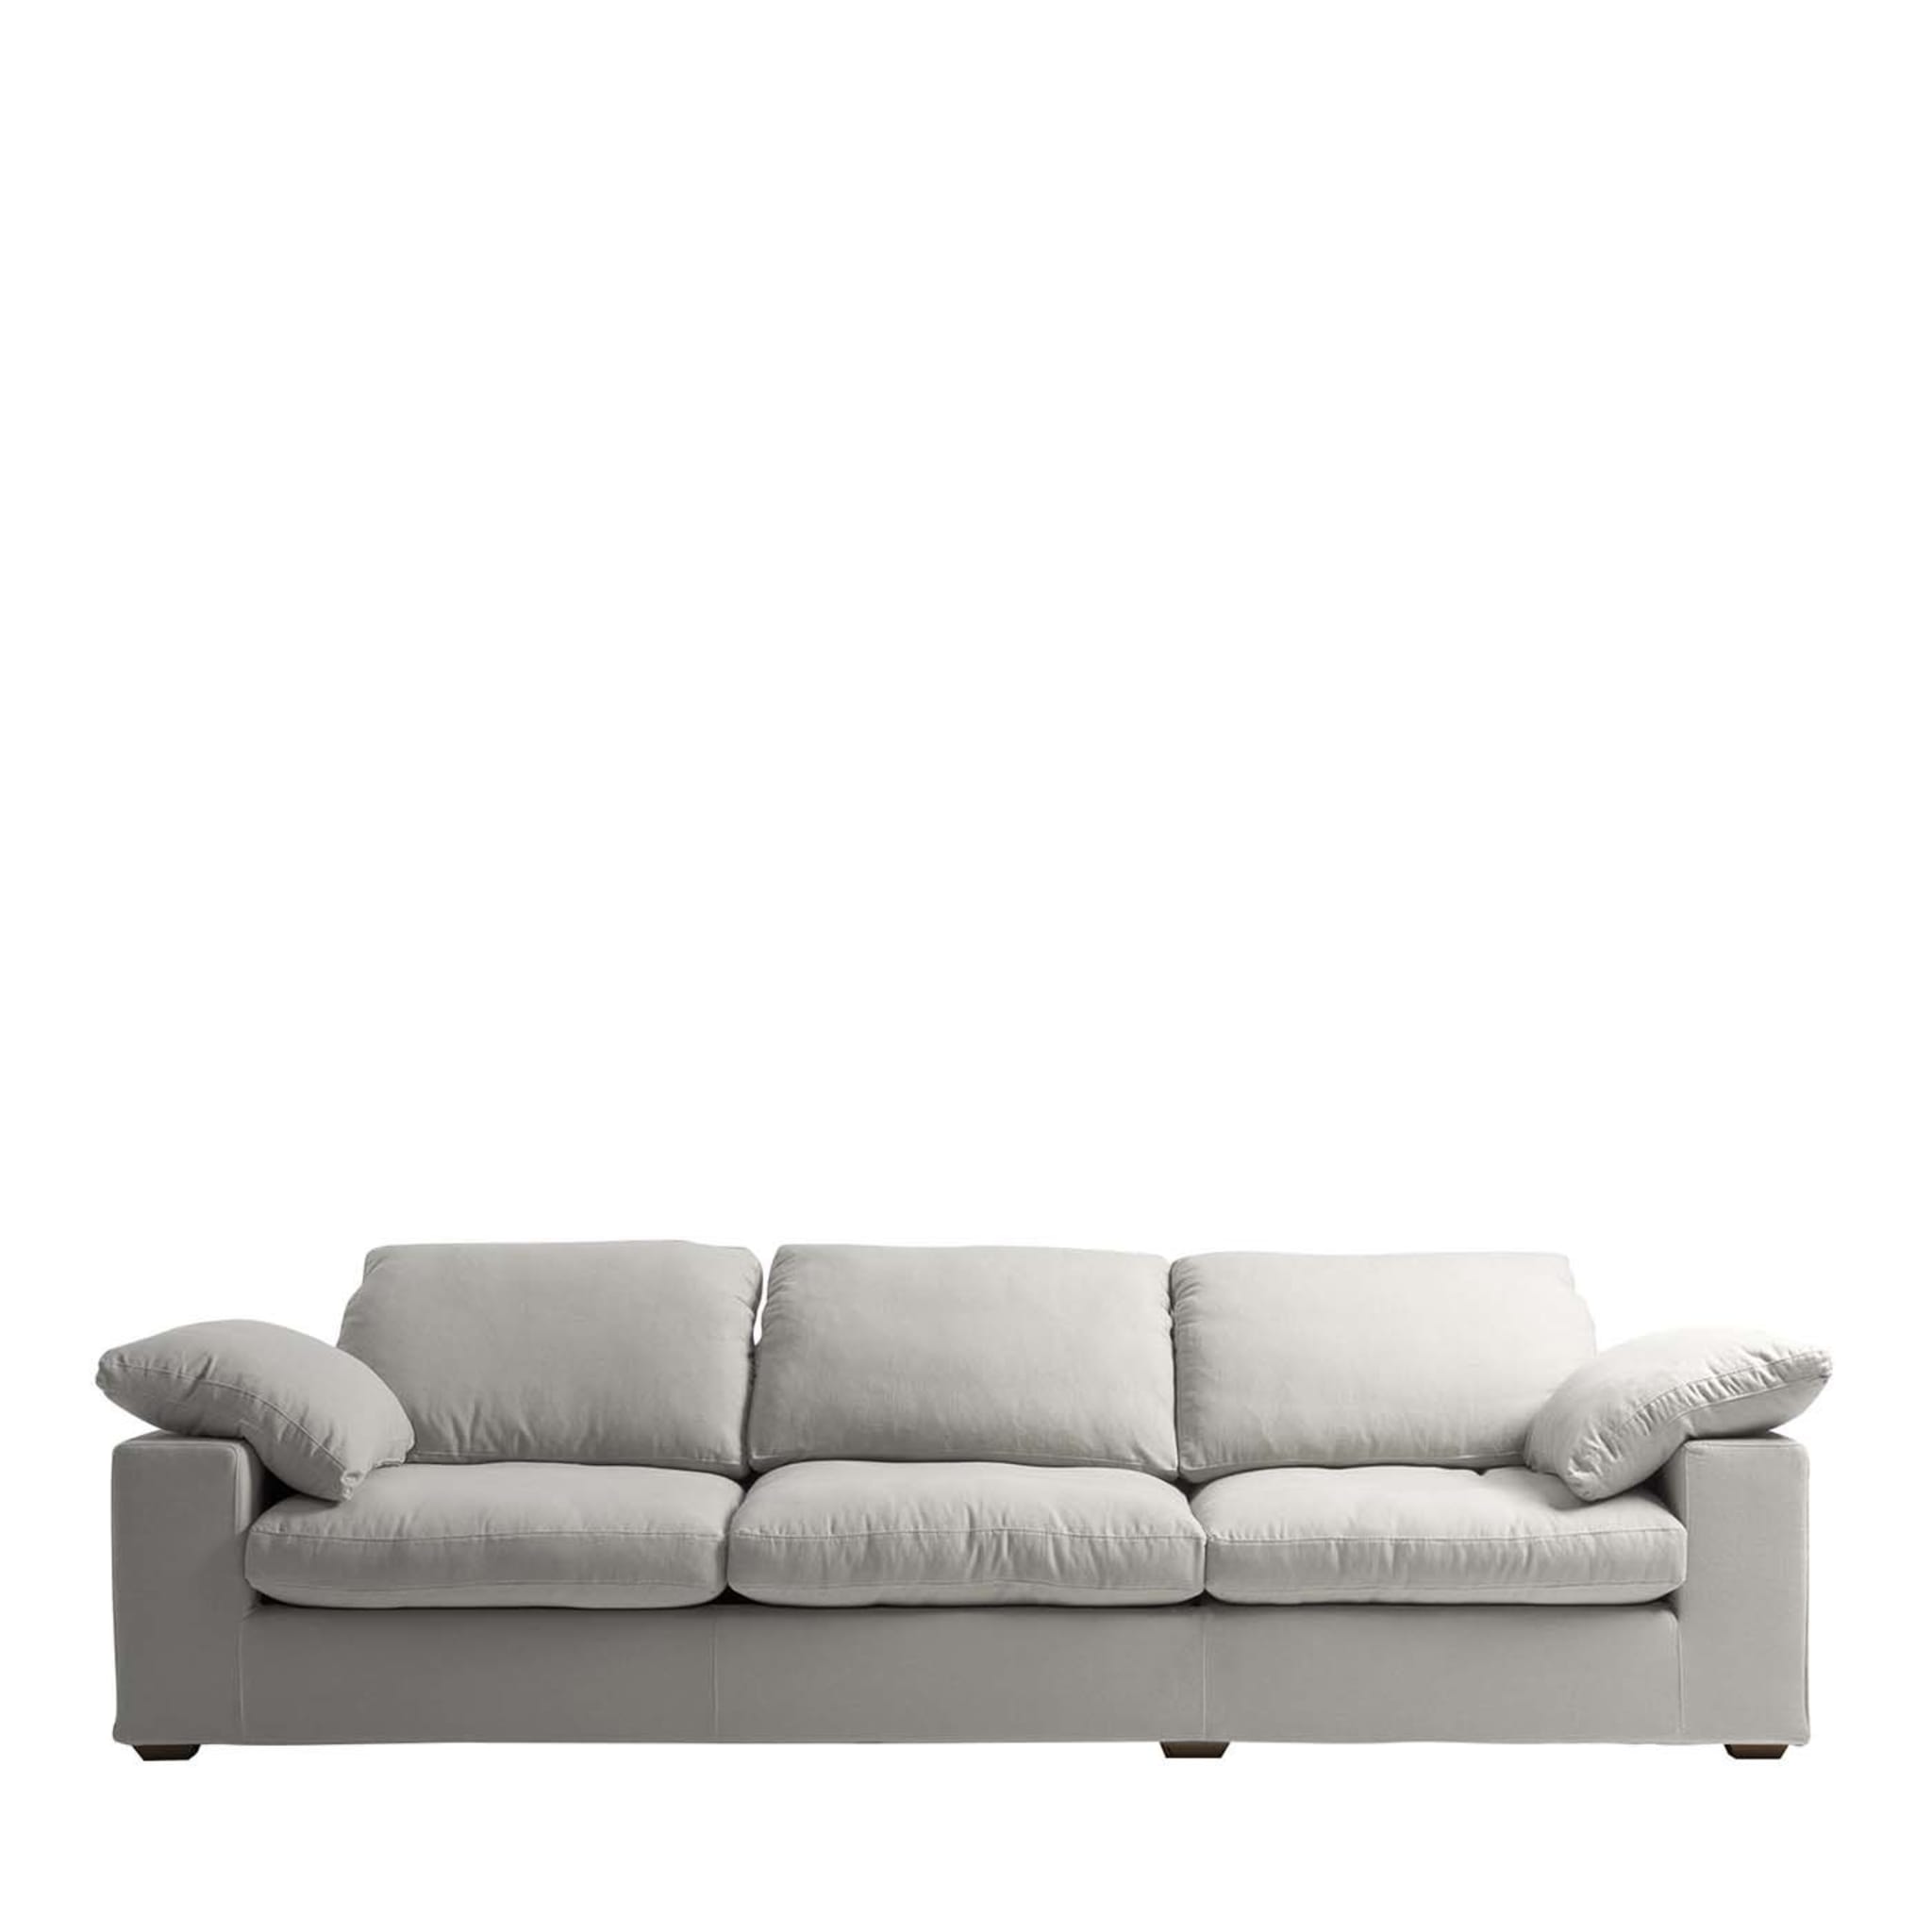 Italo 3-Sitzer Sofa Tribeca Kollektion von Marco und Giulio Mantellassi - Hauptansicht